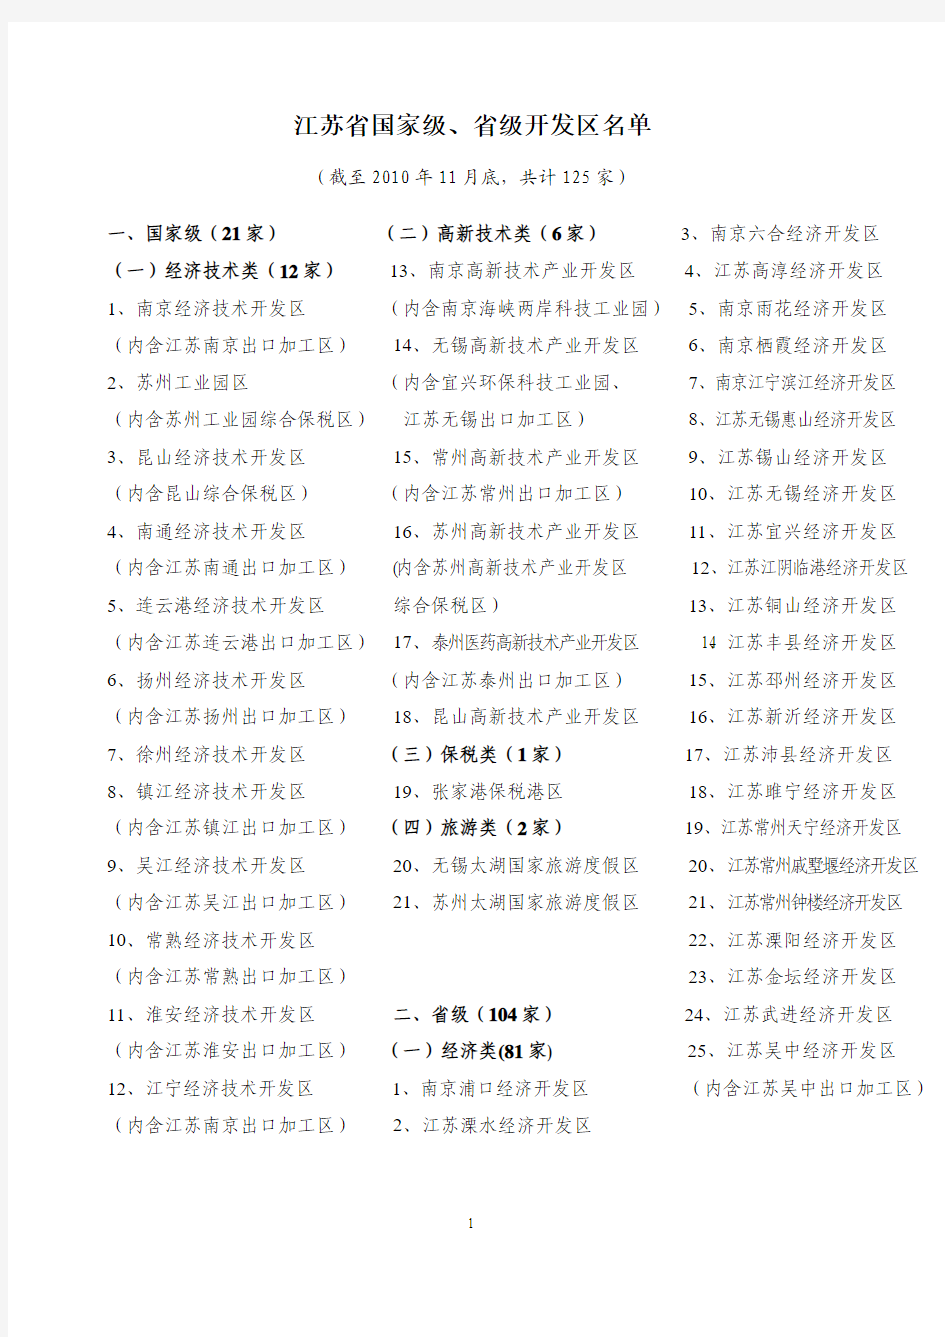 江苏省国家级、省级开发区名单